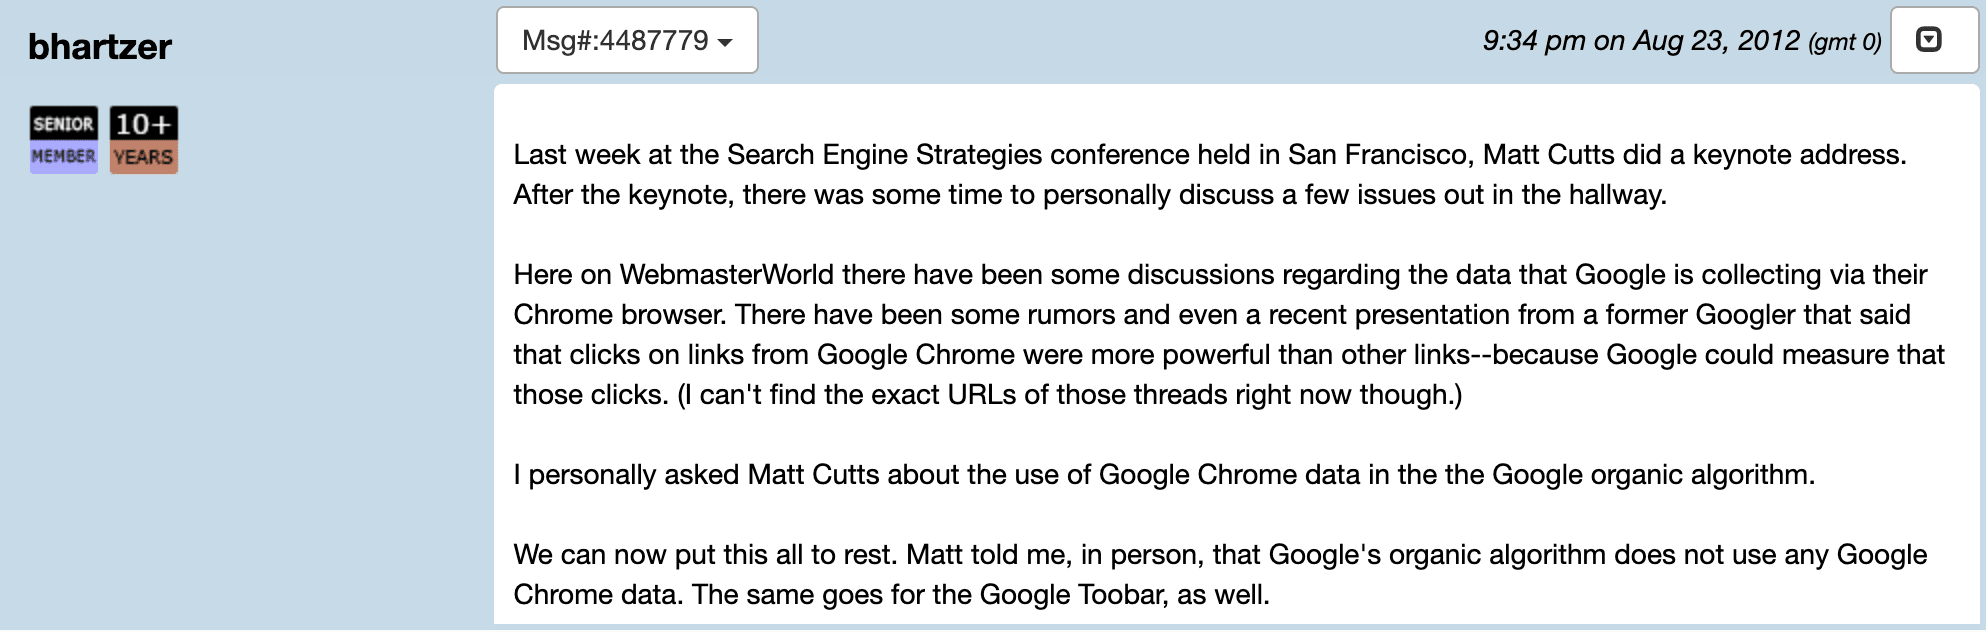 Matt Cutts about Chrome data